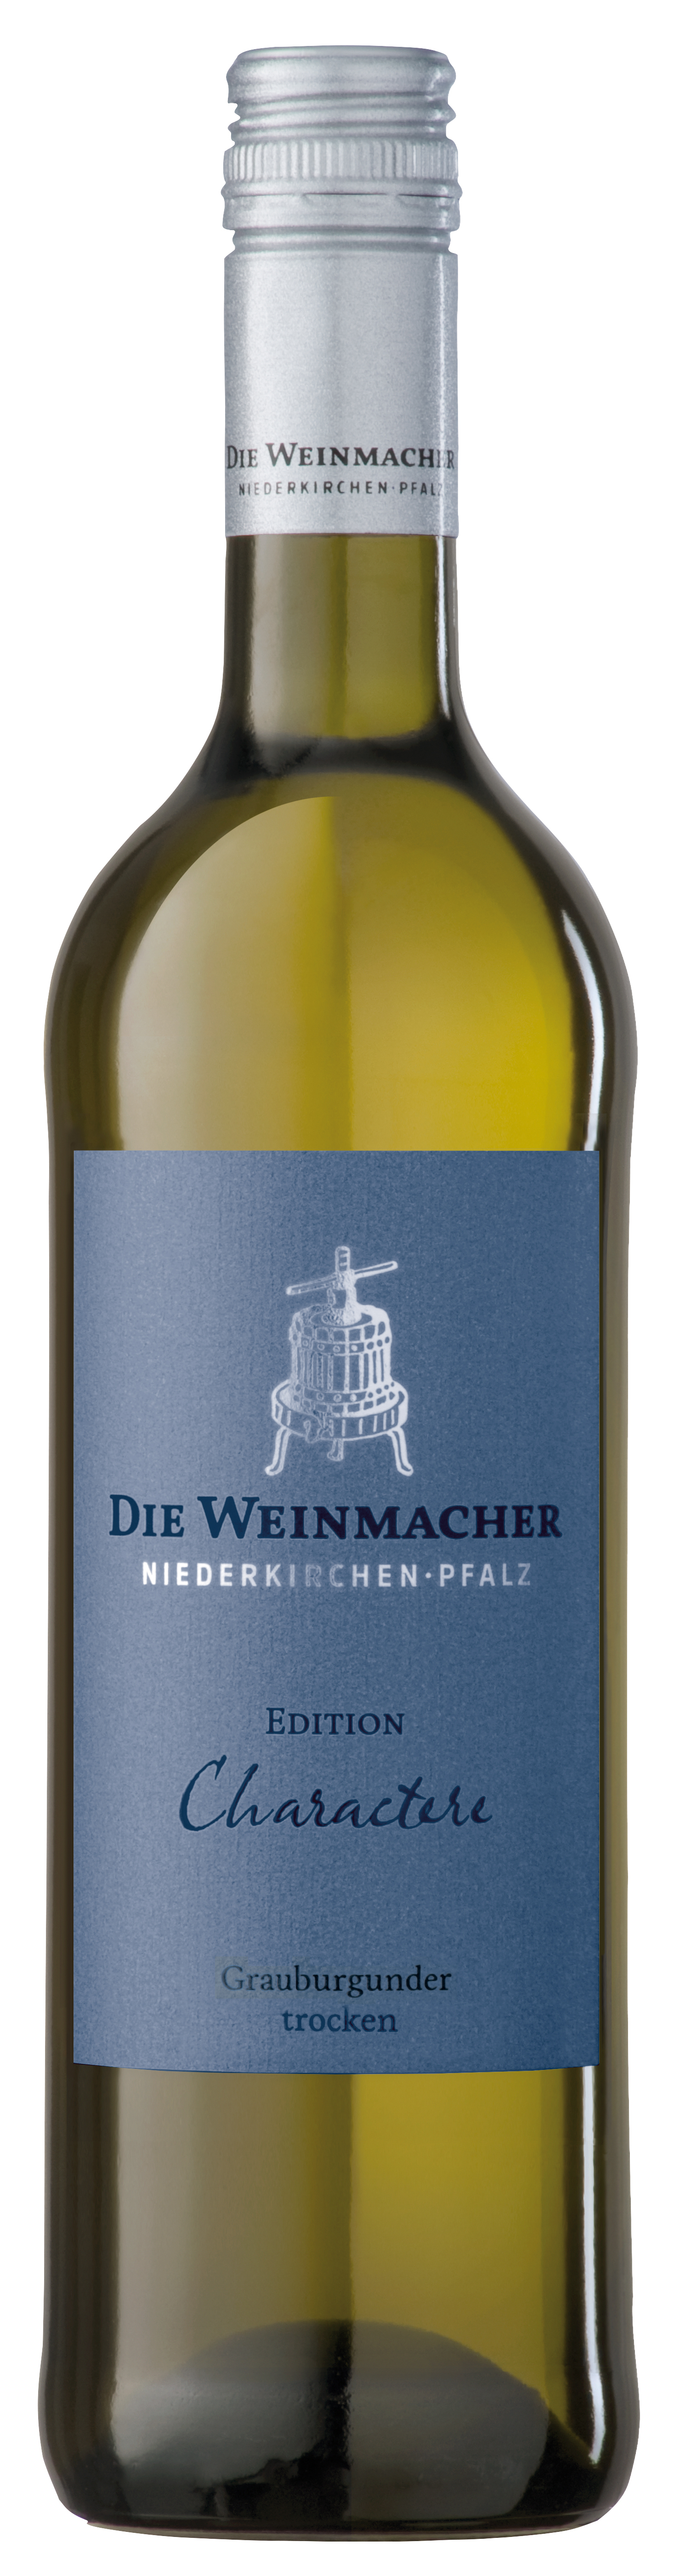 2022 Grauburgunder trocken Edition Charactere 0,75 L - Die Weinmacher